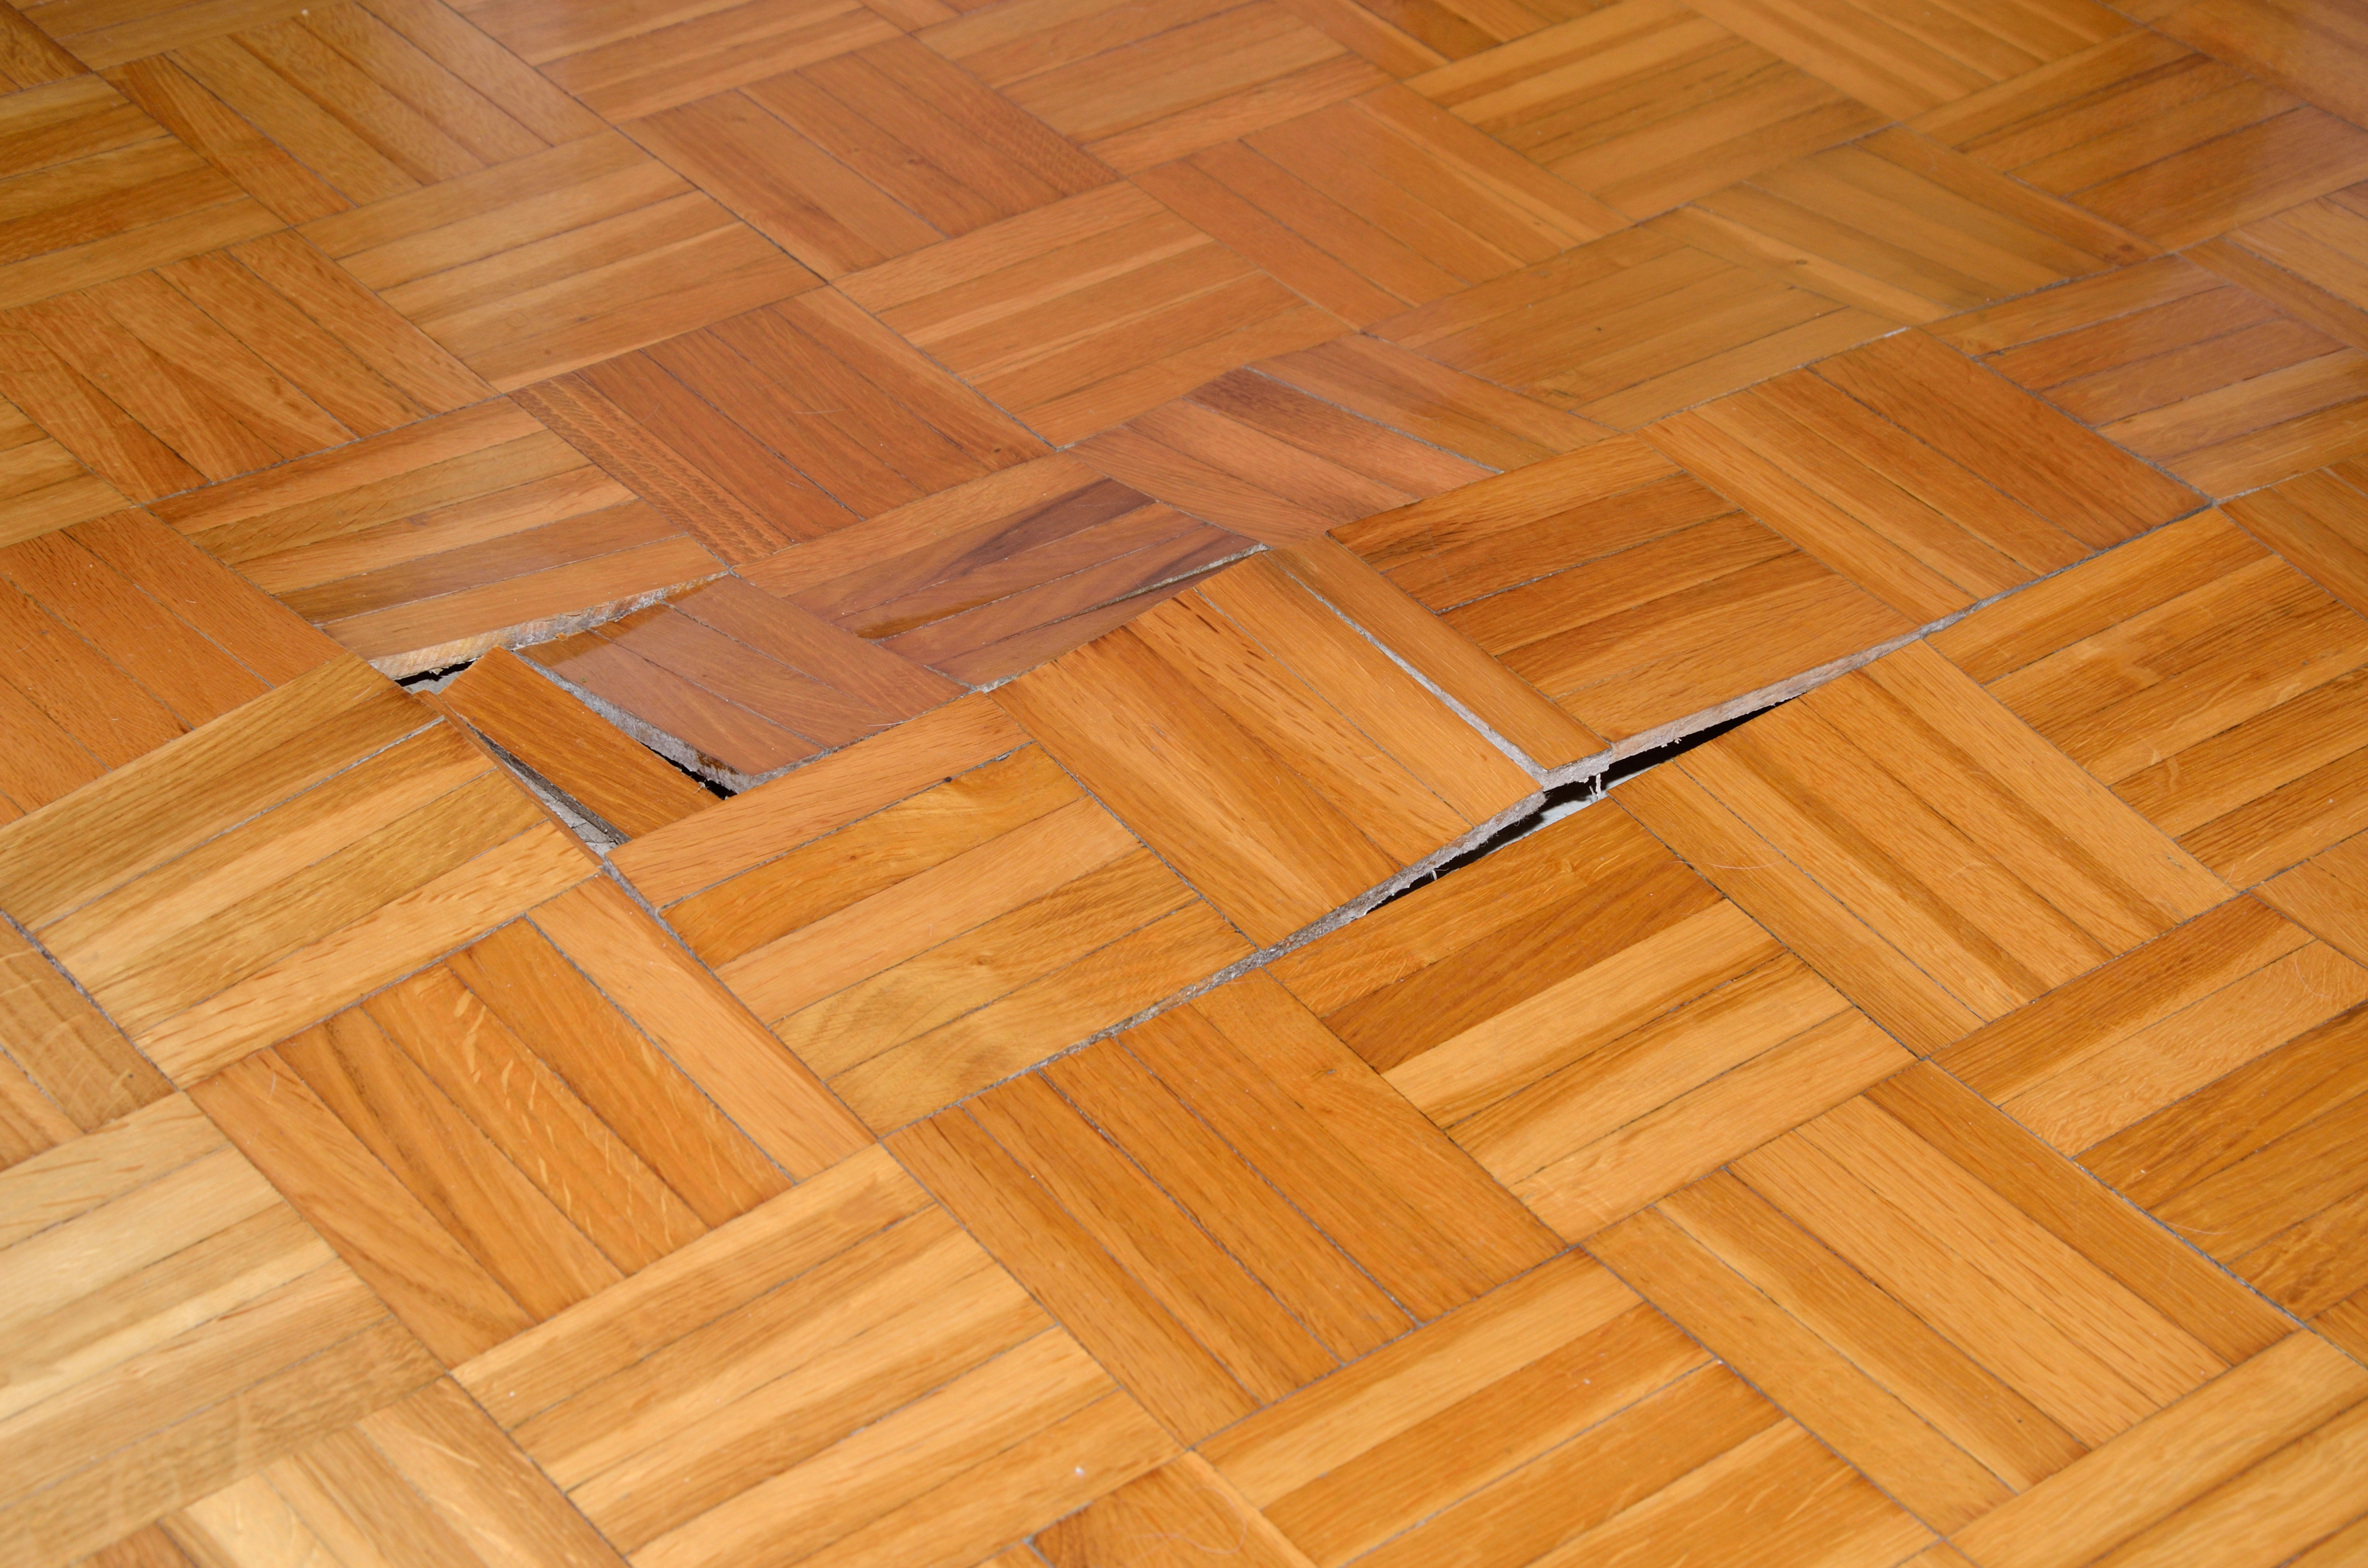 Uneven wood flooring in home